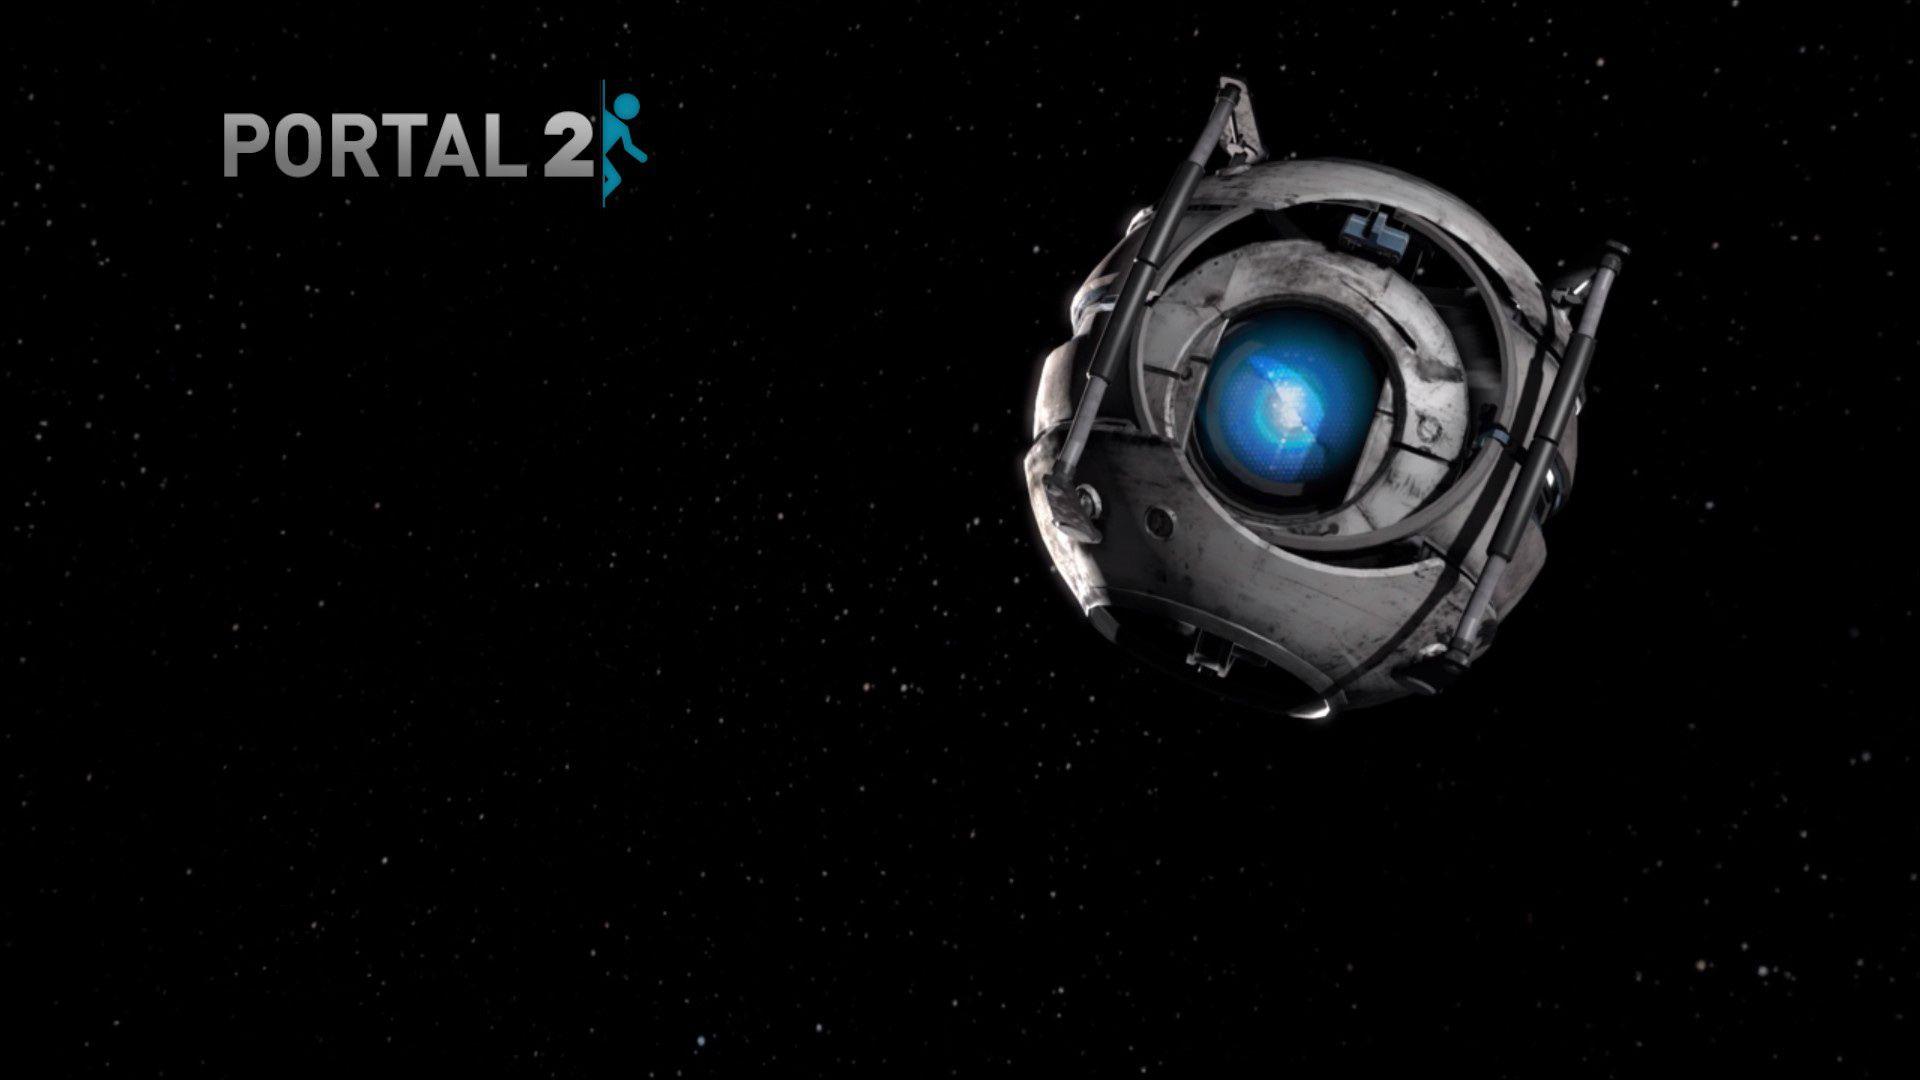 Portal 2 Wallpaper Hd Download